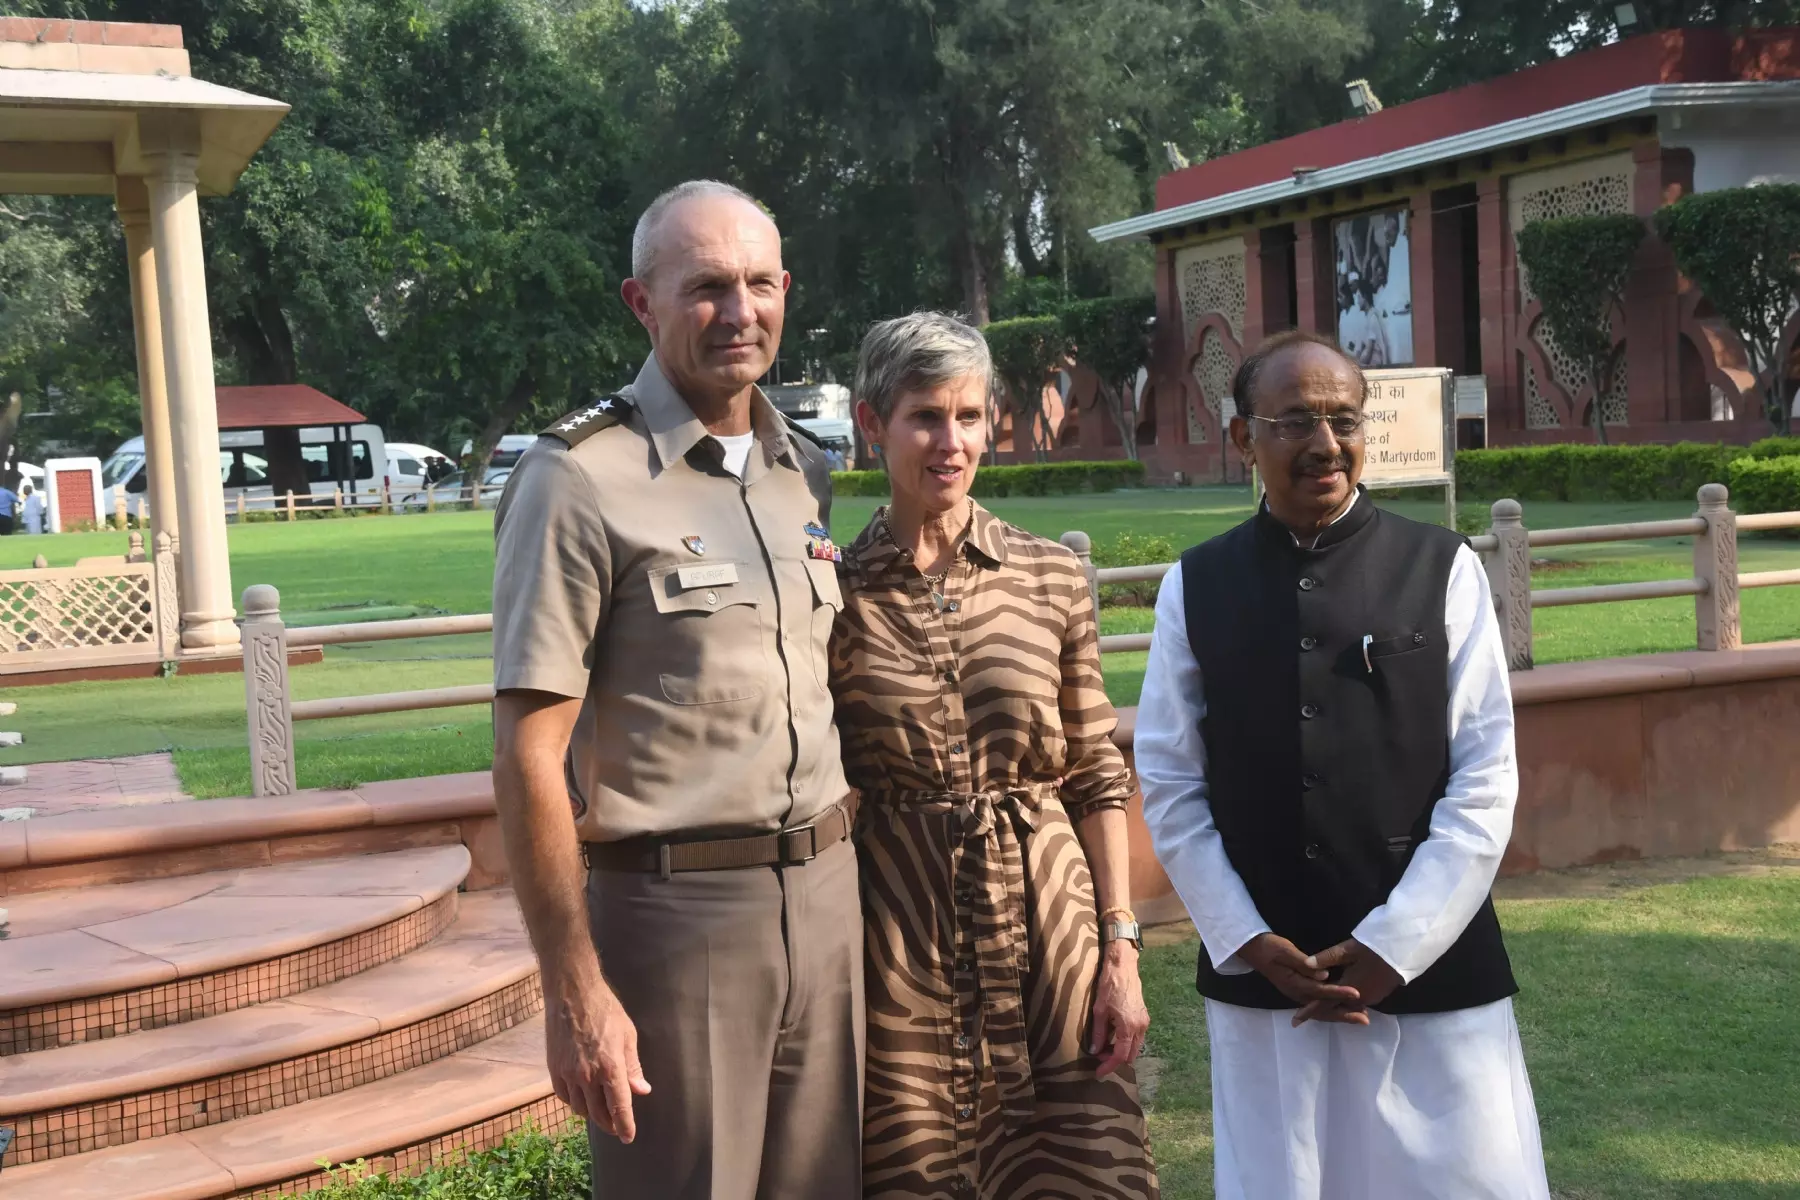 नई दिल्ली में मंगलवार 26 सितंबर को अमेरिकी सेना के चीफ ऑफ स्टाफ जनरल रैंडी जॉर्ज ने नई दिल्ली में गांधी स्मृति का दौरा किया। हिन्दुस्थान समाचार/ फोटो गणेश विष्ट